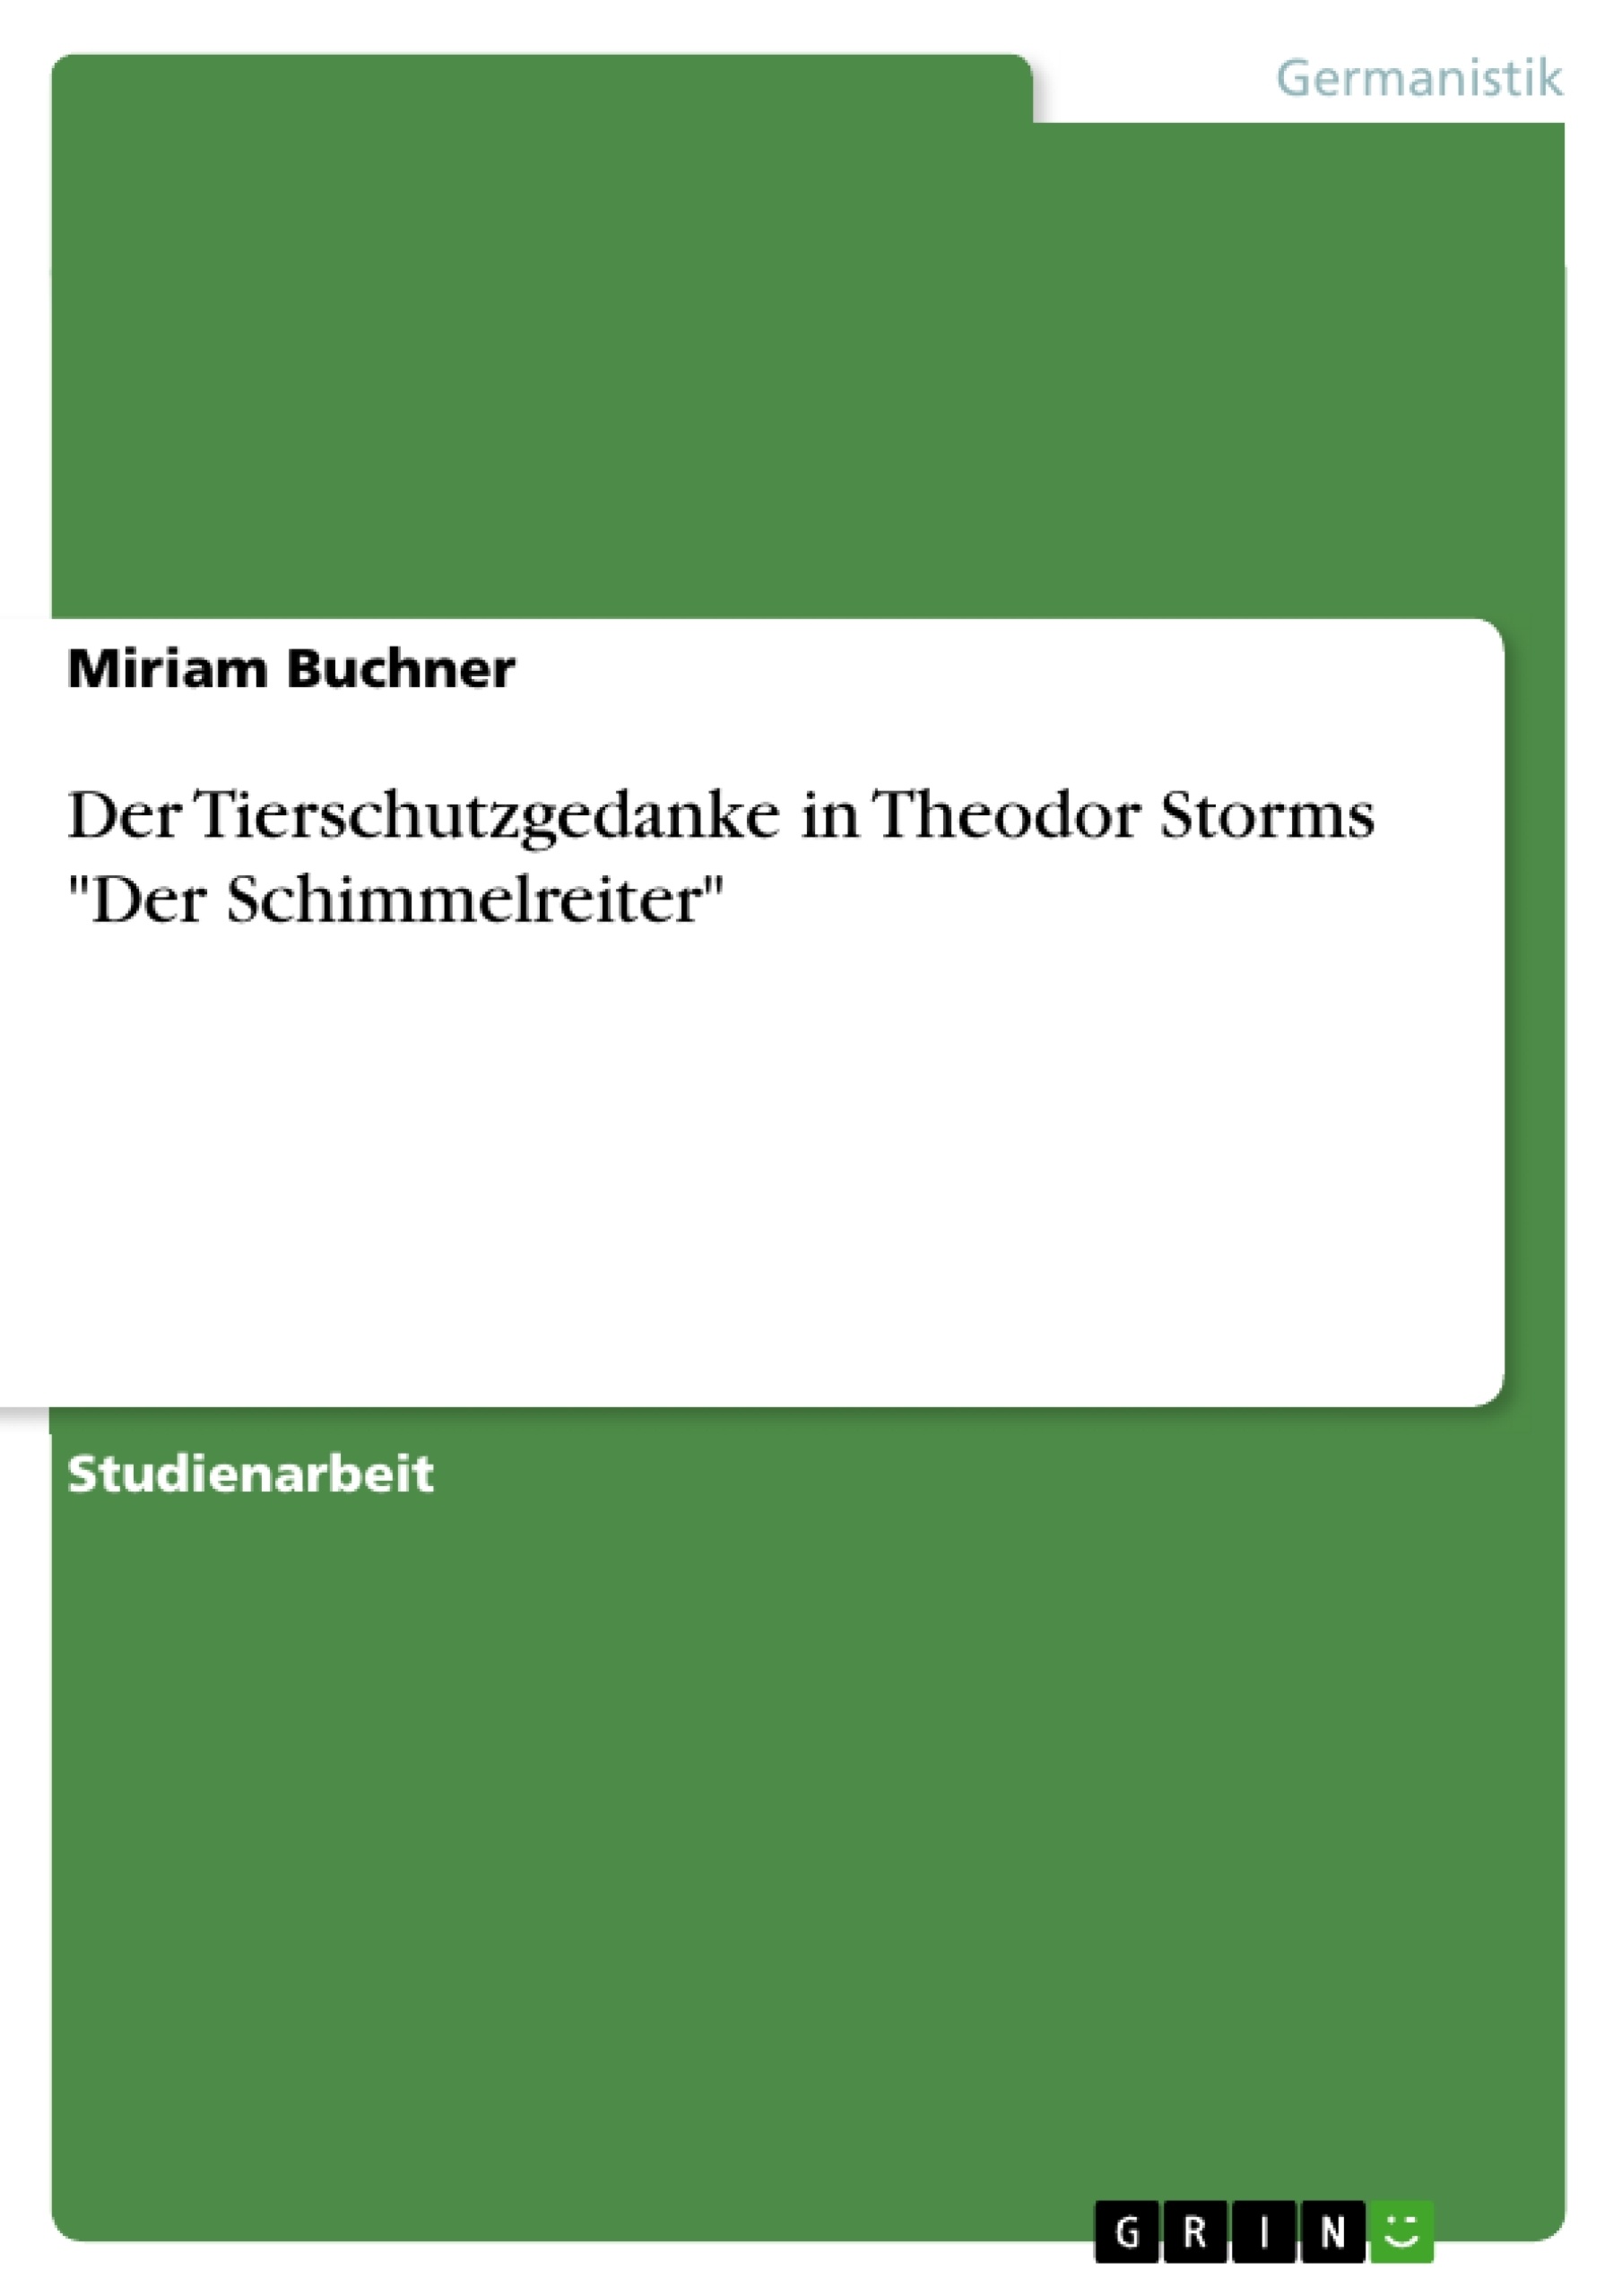 Title: Der Tierschutzgedanke in Theodor Storms "Der Schimmelreiter"